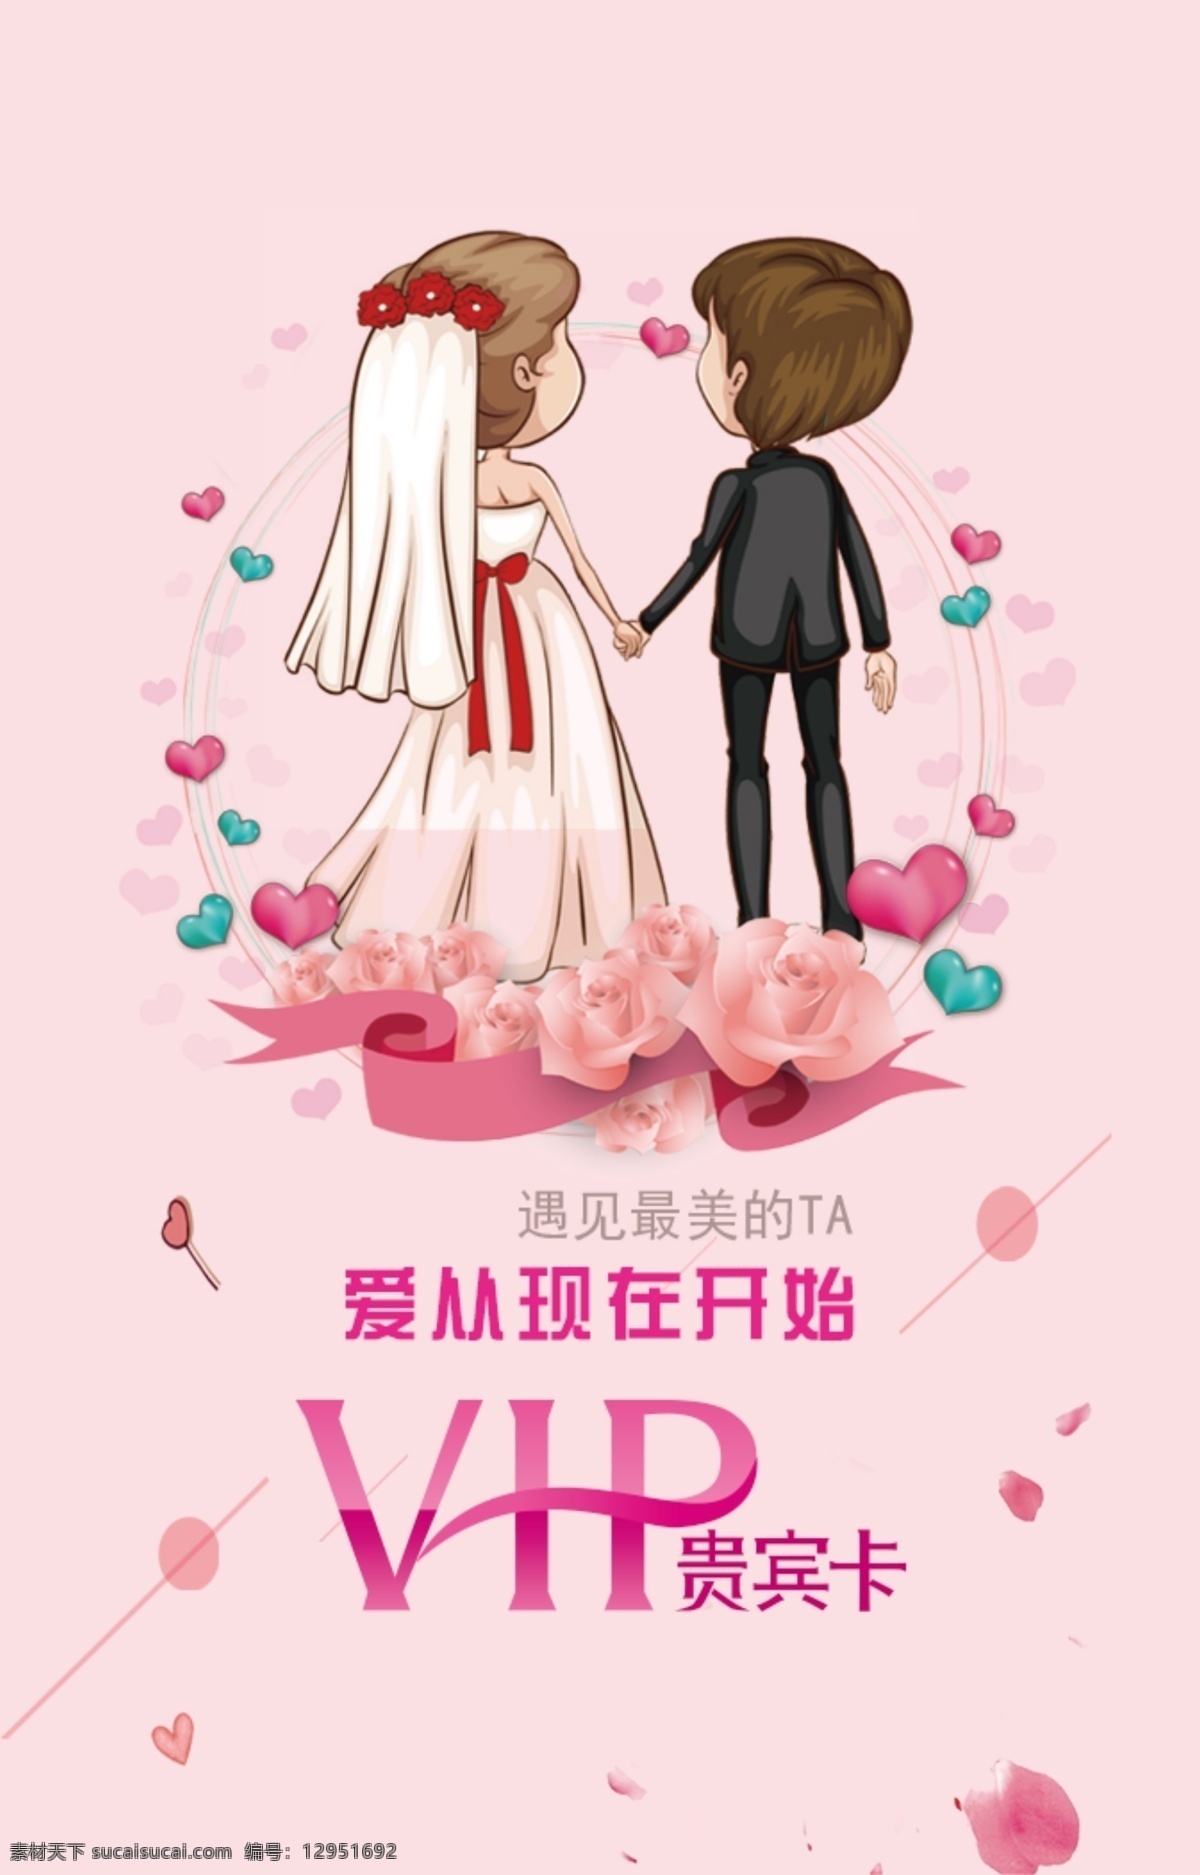 婚介vip卡 婚姻 中介 vip 贵宾卡 爱情 牵手 粉色 卡通 会员卡 名片卡片